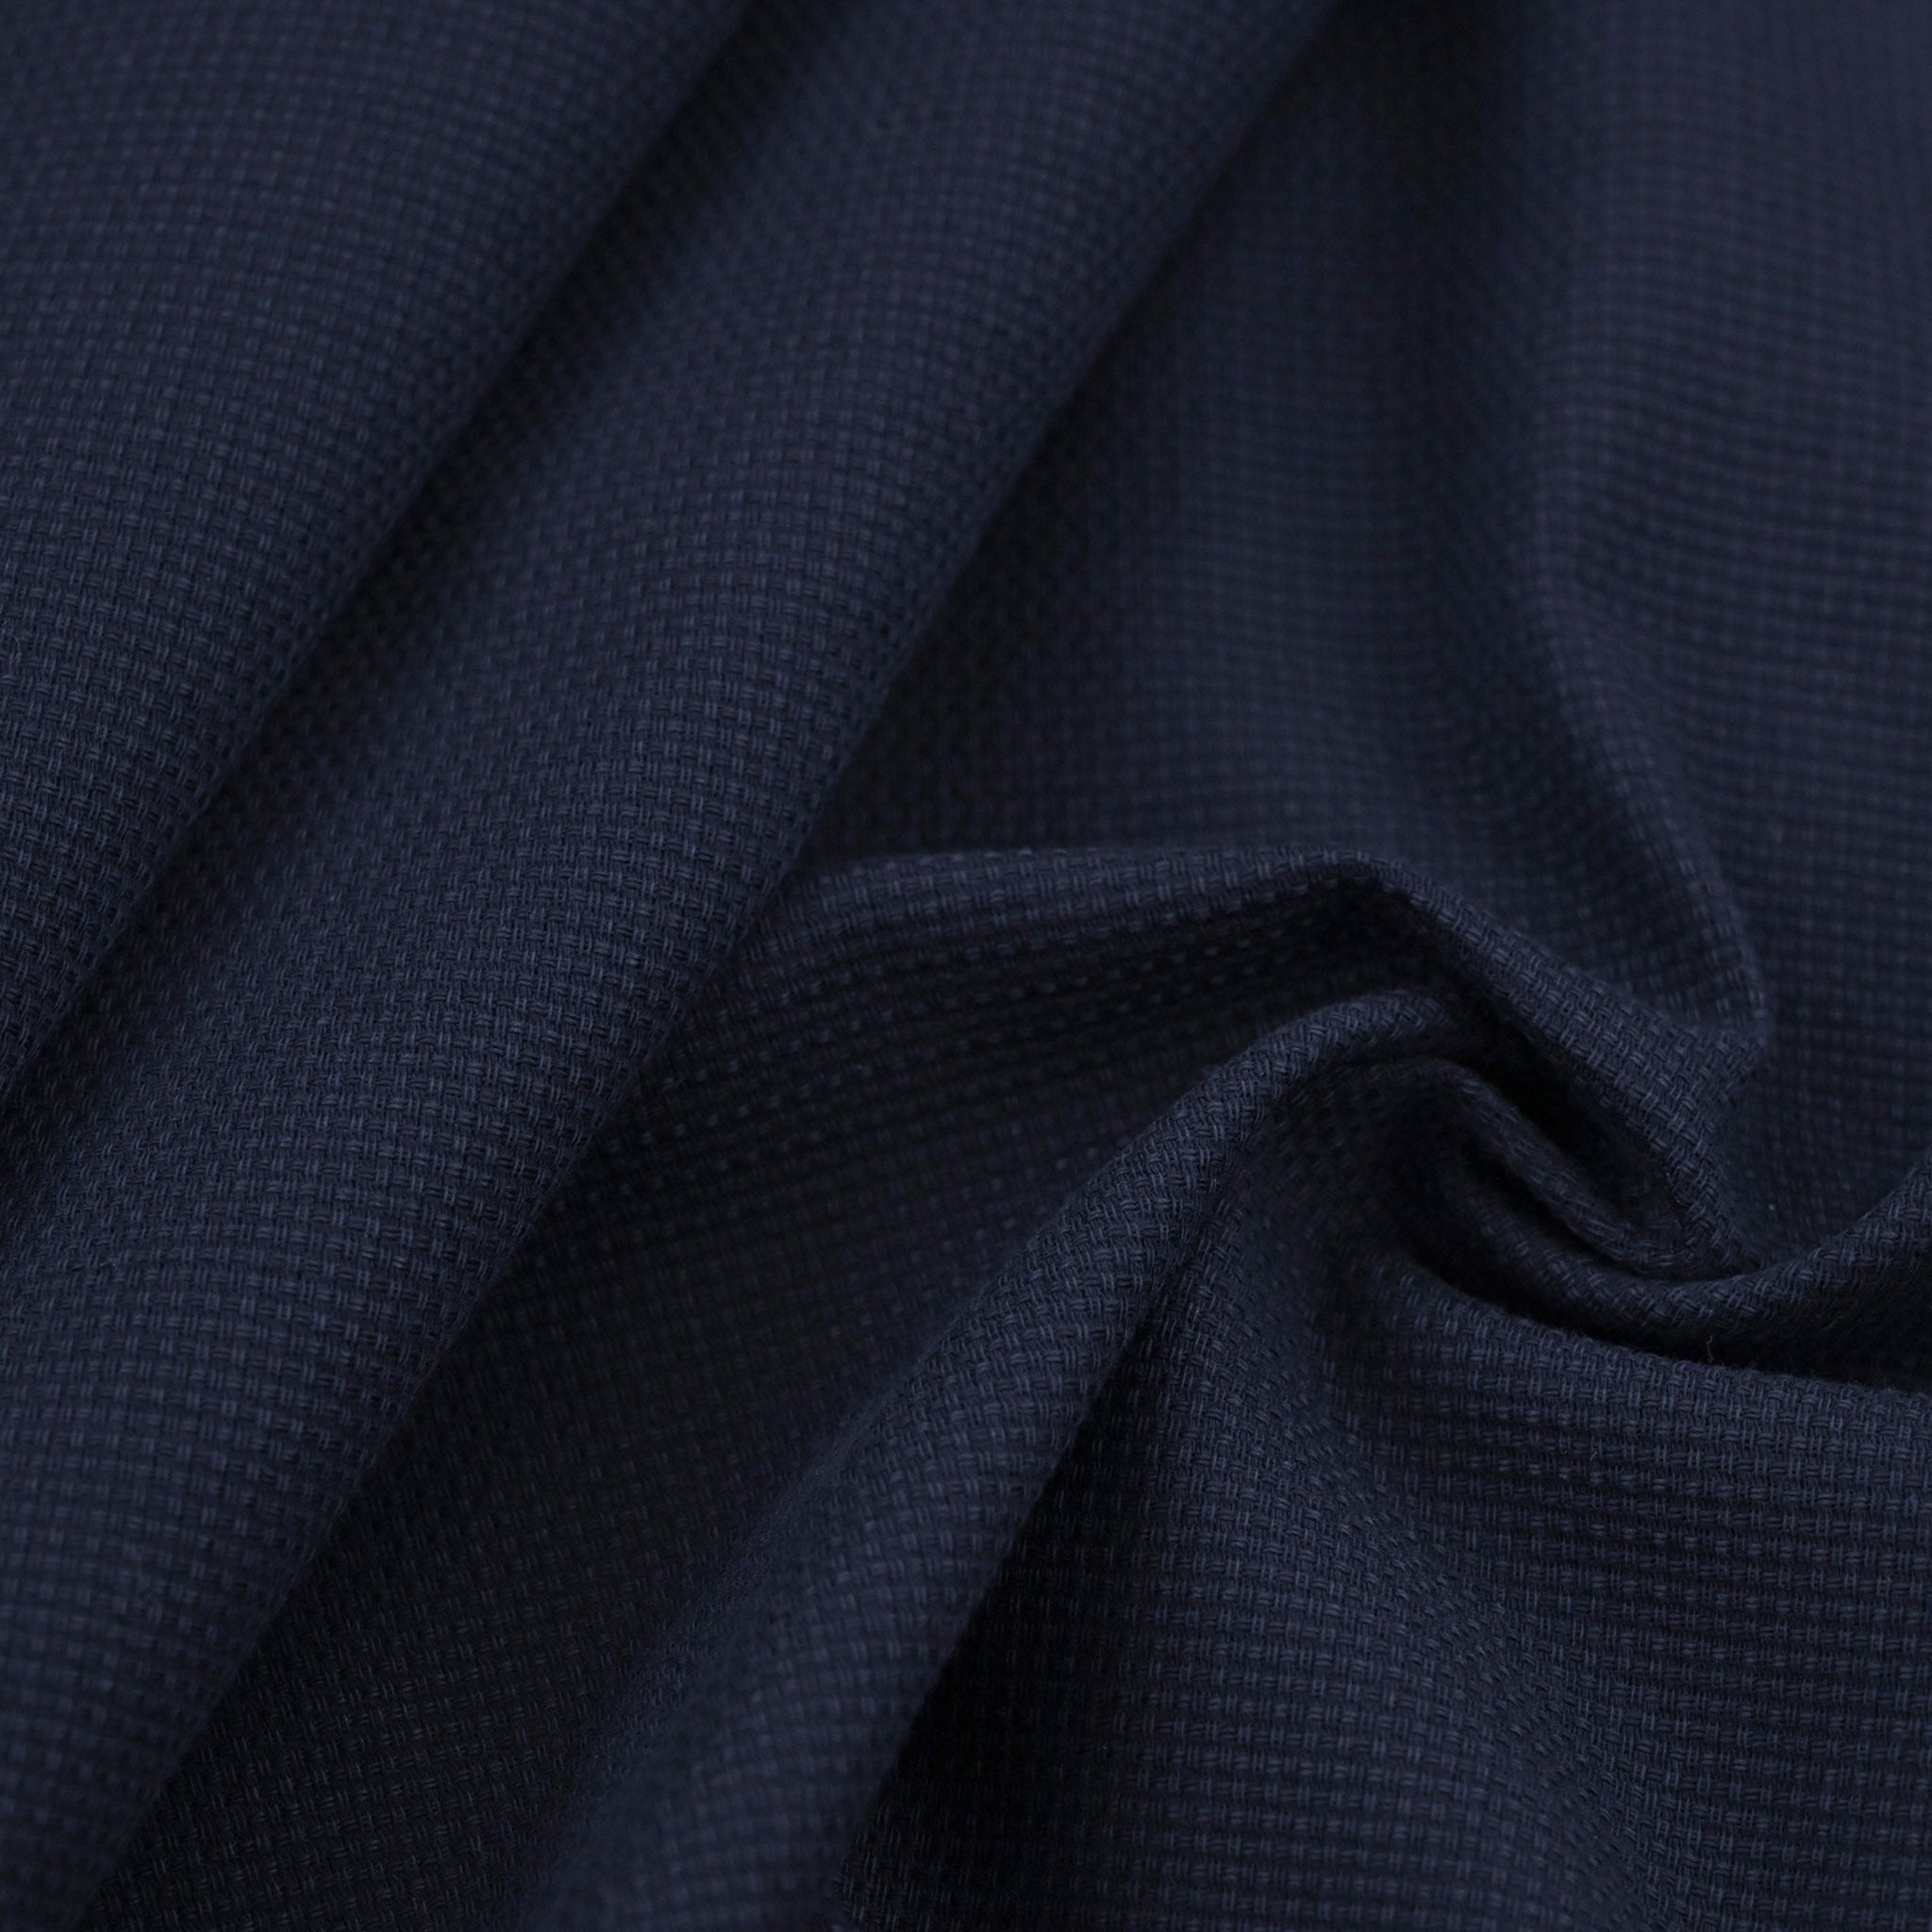 Waxed Canvas Fabric Navy Khaki Color Stock Photo 1431135470